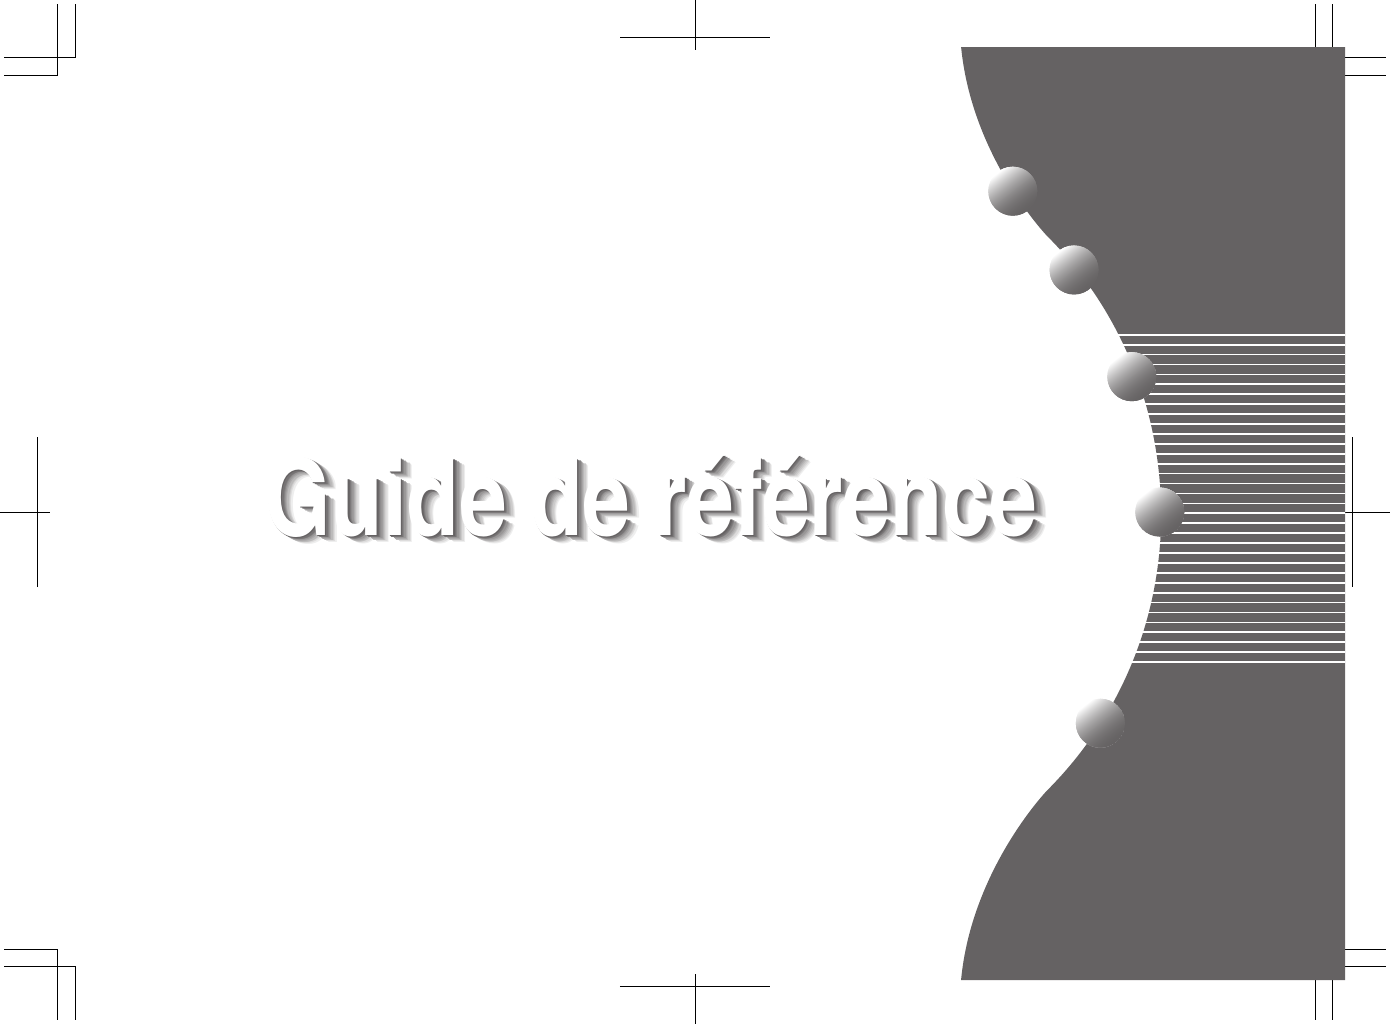 Guide de référenceGuide de référenceGuide de référenceGuide de référenceGuide de référenceGuide de référenceGuide de référenceGuide de référenceGuide de référenceGuide de référence